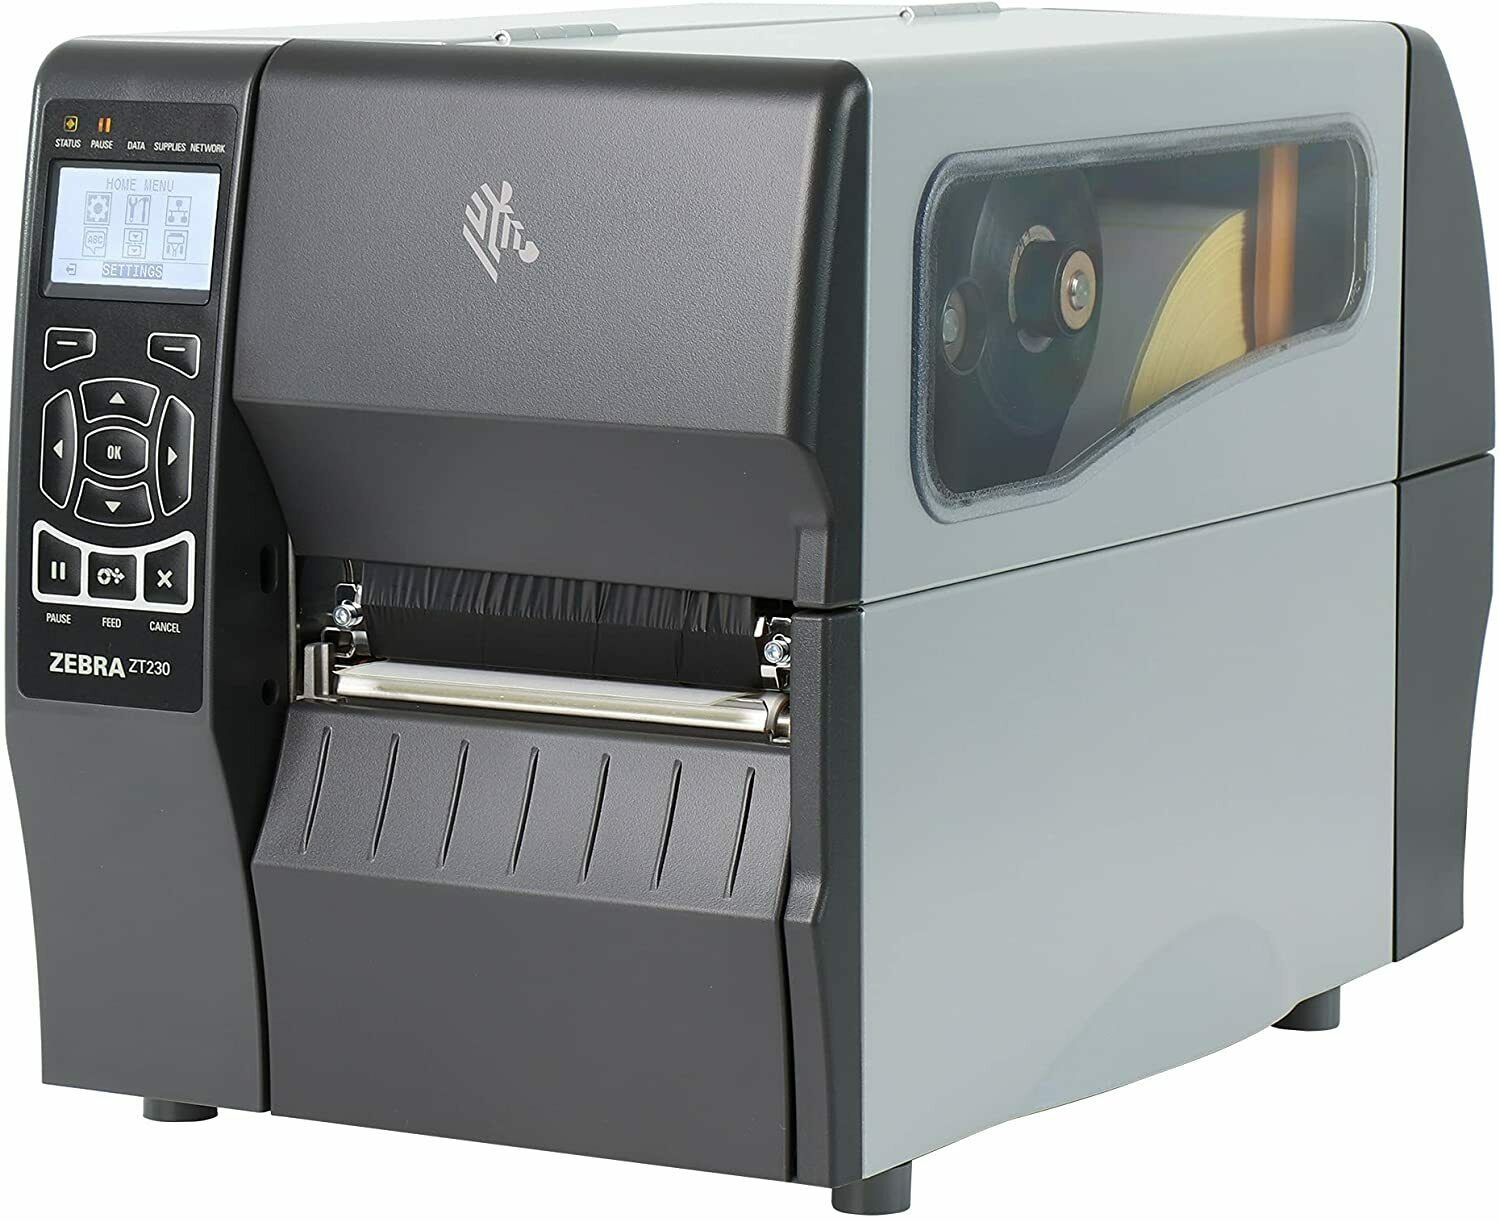 GERBER EDGE 2 Digitaldrucker Thermotransfer Aufkleber Drucker